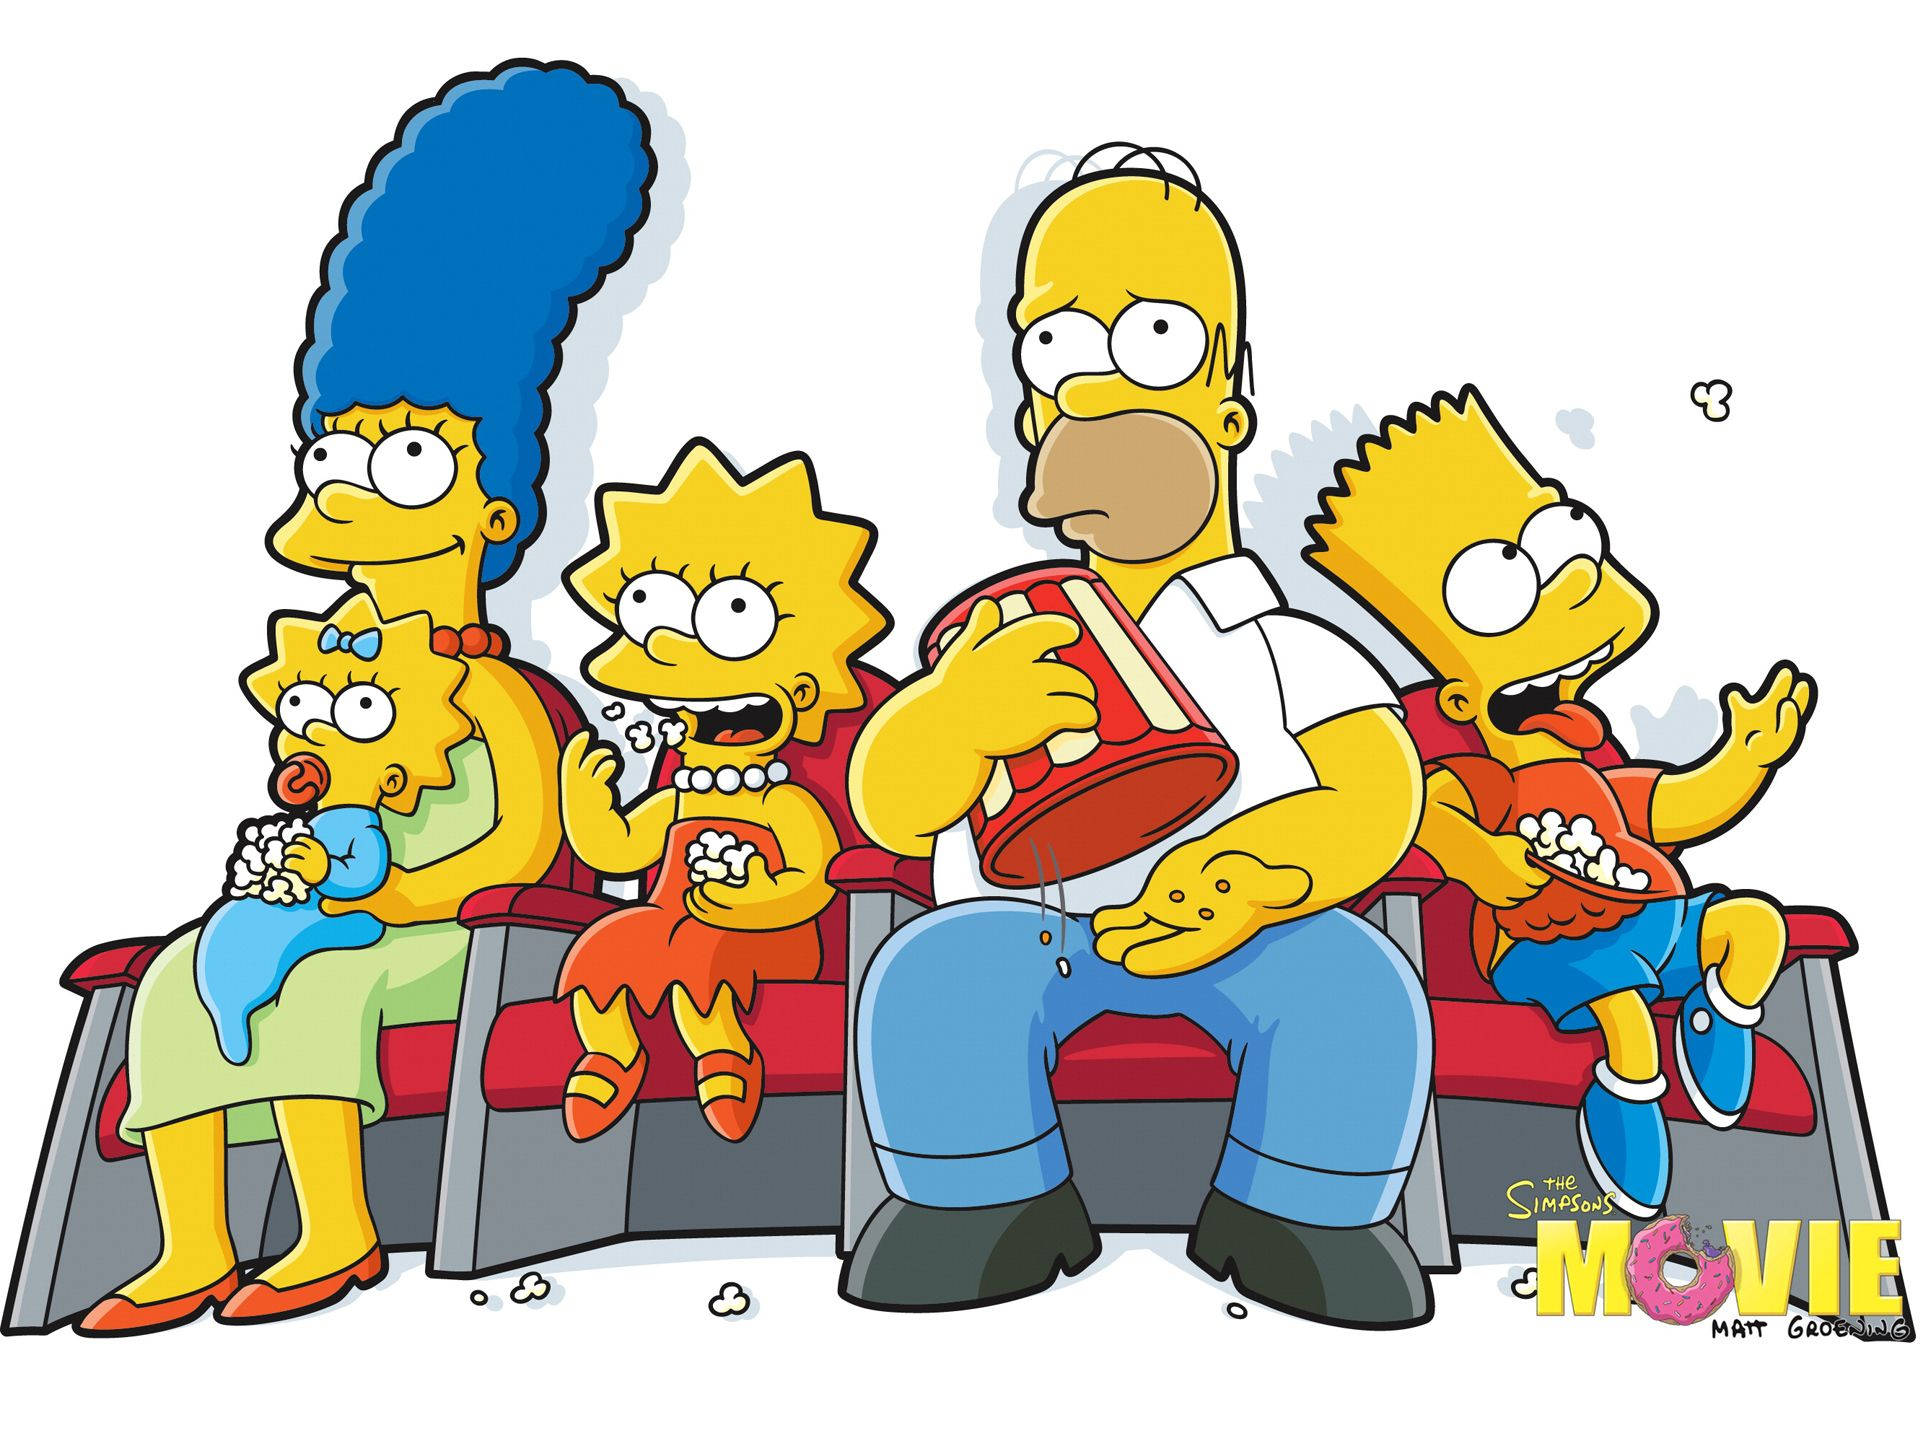 Dersimpsons-film: Die Simpsons-familie Im Kino. Wallpaper